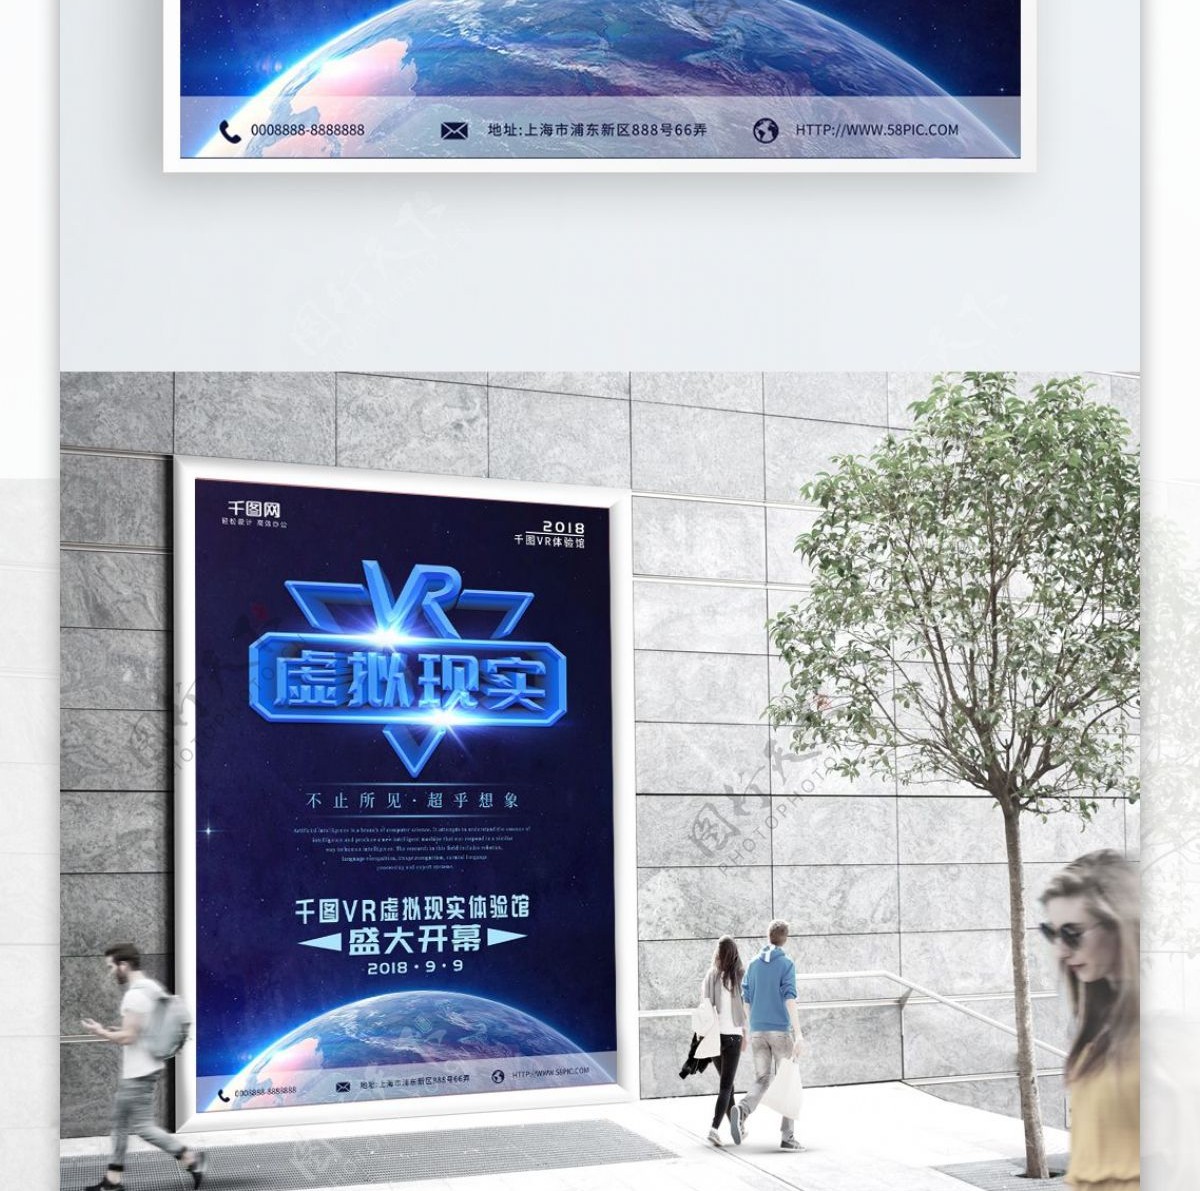 地球VR虚拟现实海报蓝色海报